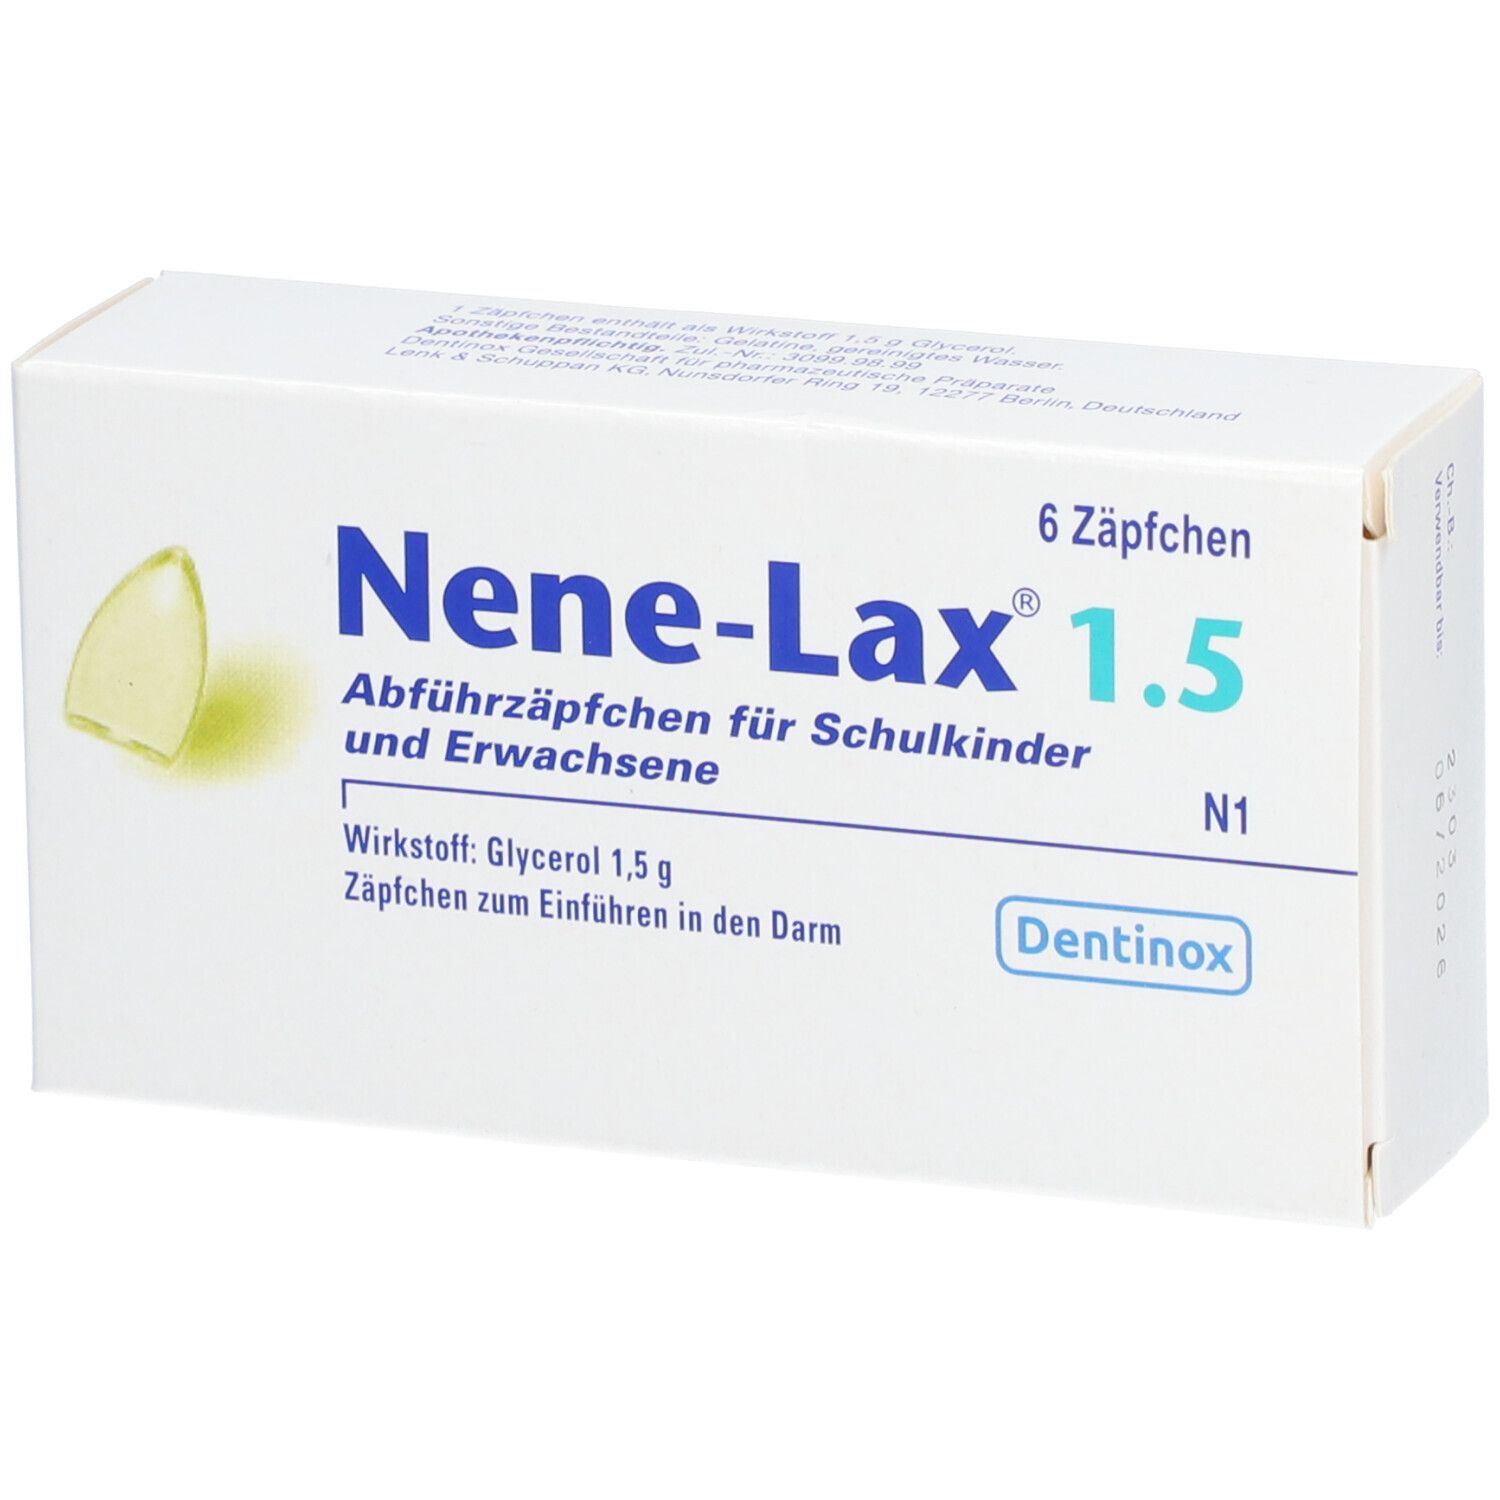 Nene-Lax® 1.5